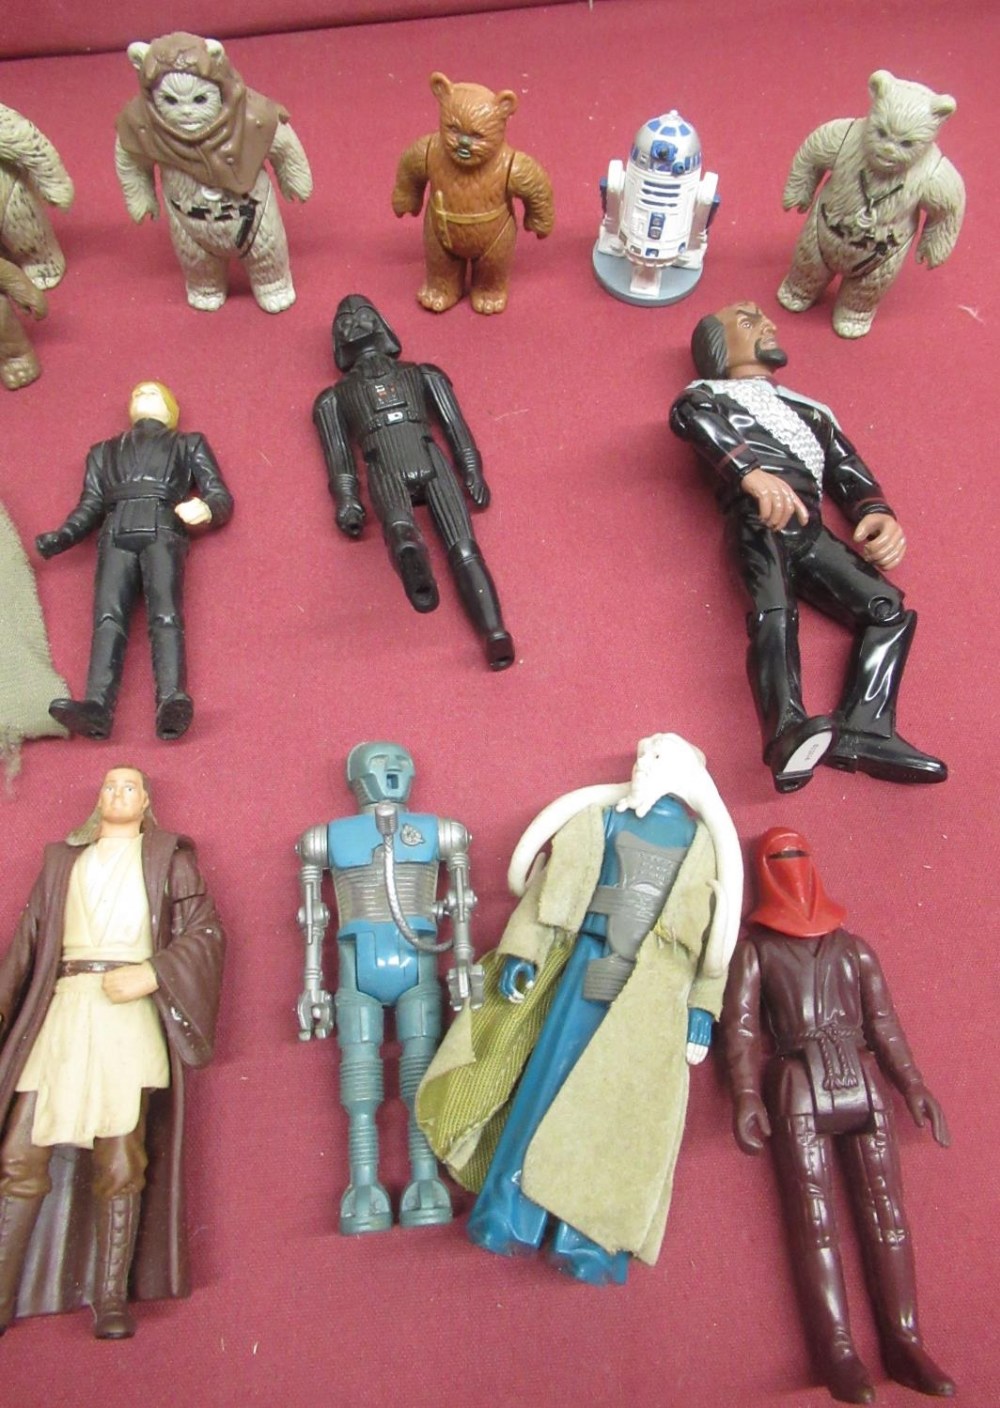 Collection of Kenner and other Star Wars figures including Ewoks, Darth Vader, Luke Skywalker, - Image 2 of 3